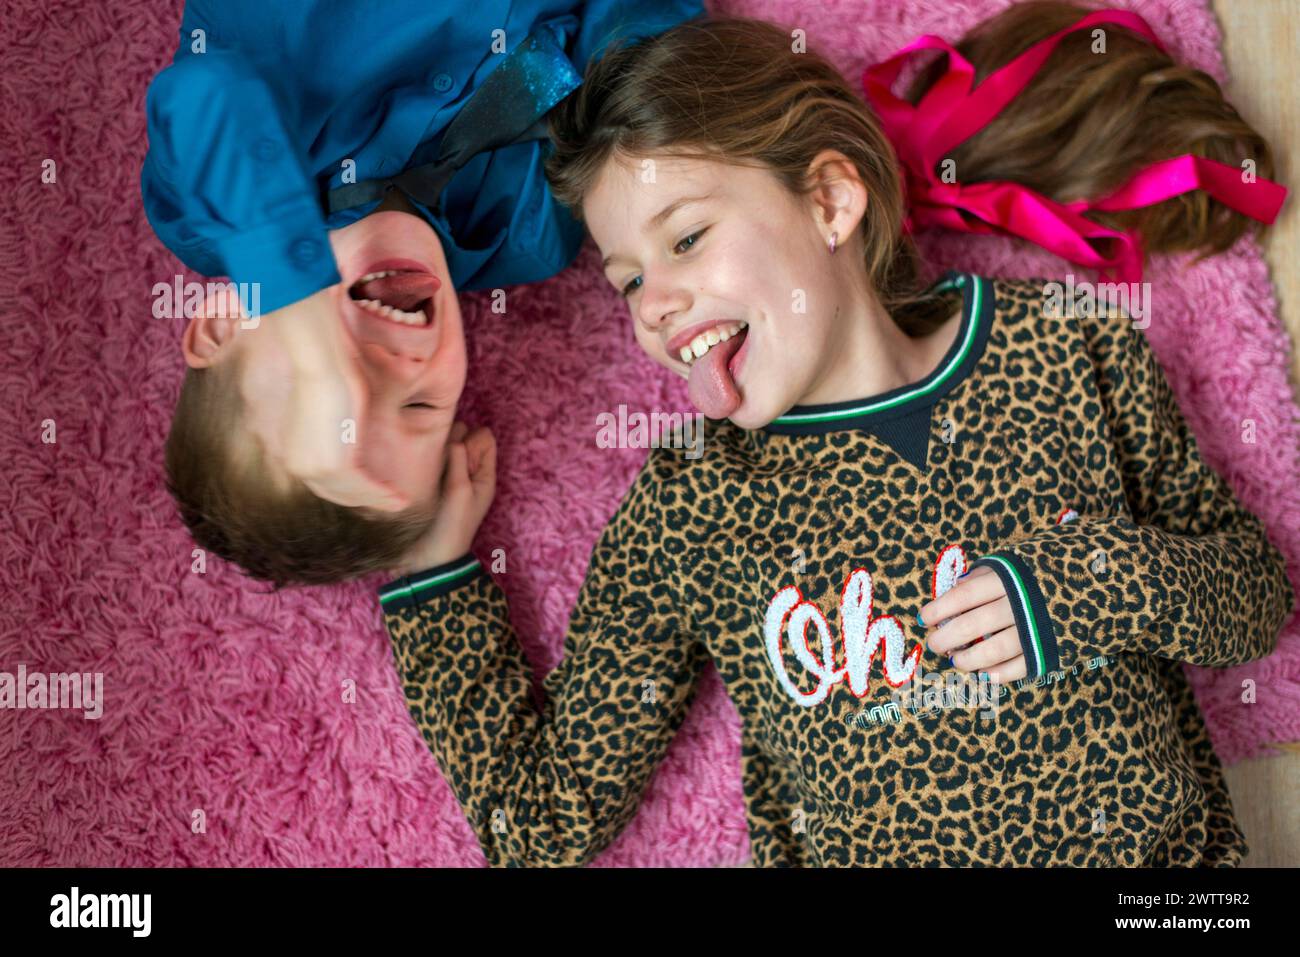 Deux enfants faisant des visages drôles tout en étant couchés sur un tapis rose. Banque D'Images